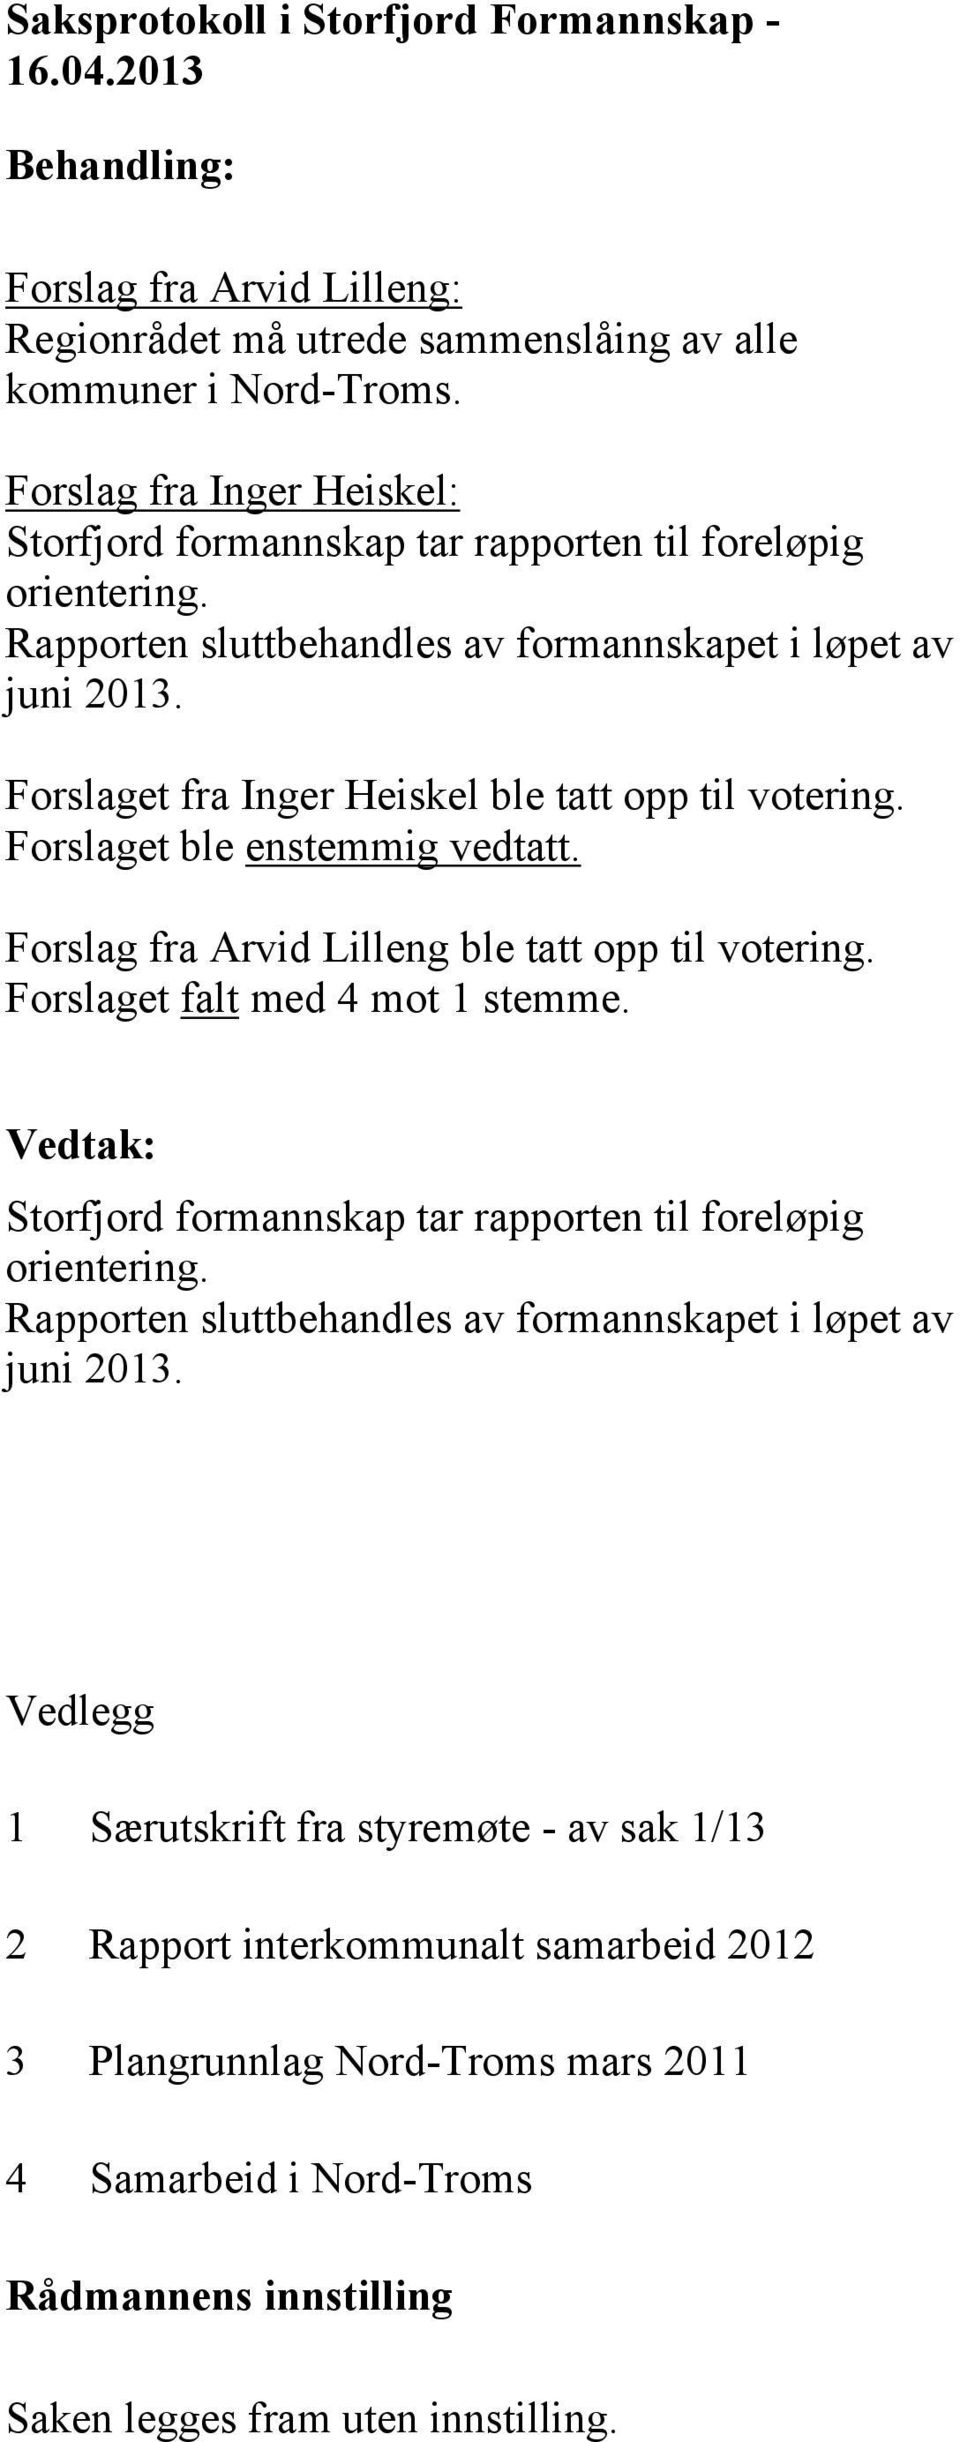 Forslaget fra Inger Heiskel ble tatt opp til votering. Forslaget ble enstemmig vedtatt. Forslag fra Arvid Lilleng ble tatt opp til votering. Forslaget falt med 4 mot 1 stemme.